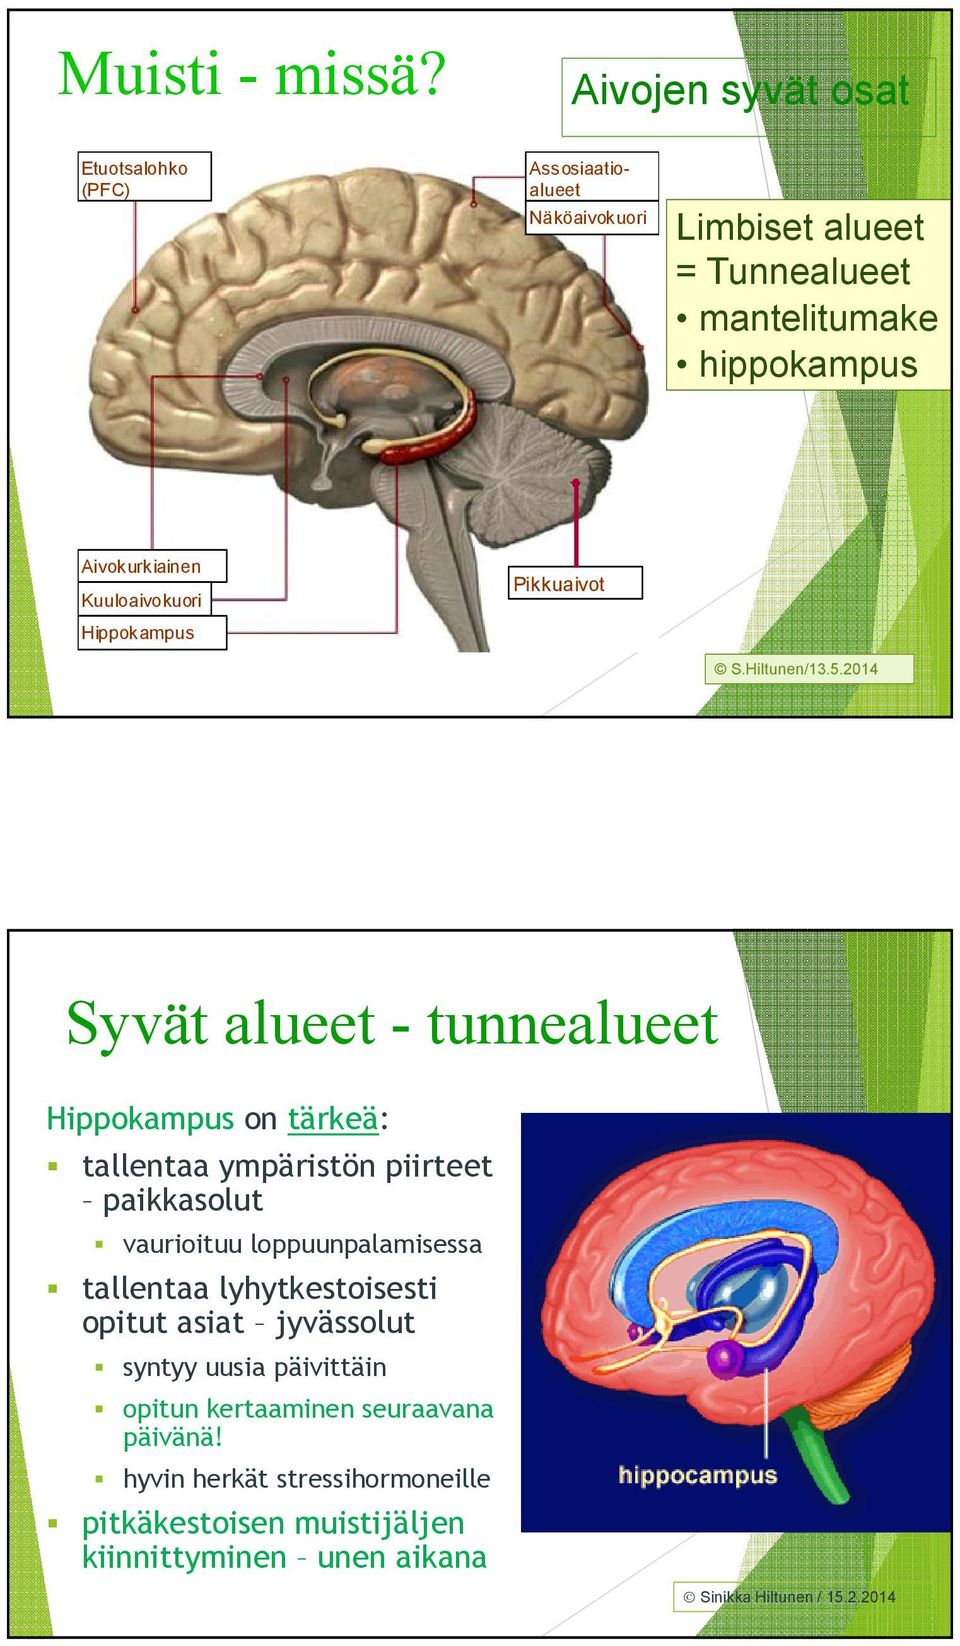 Kuuloaivokuori Hippokampus http://www.shockmd.